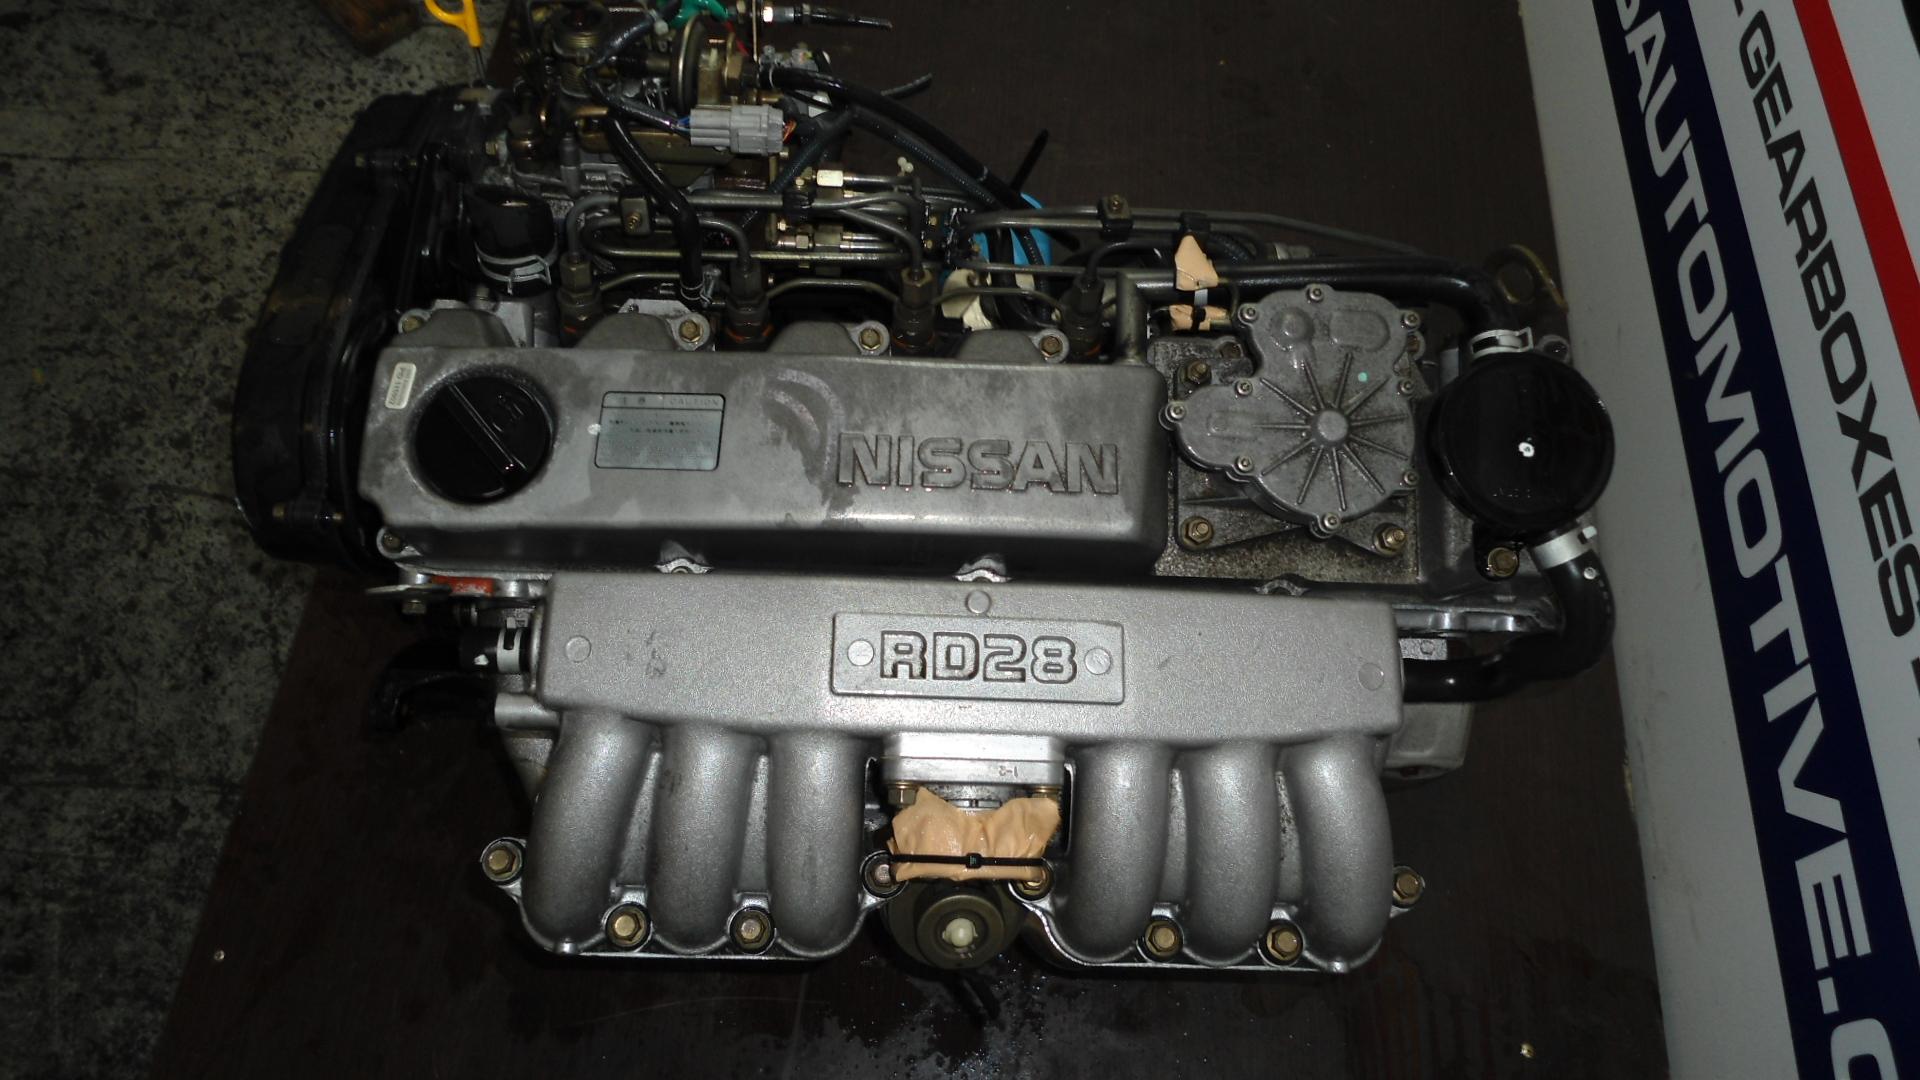 Ld28 nissan motor specifications #3